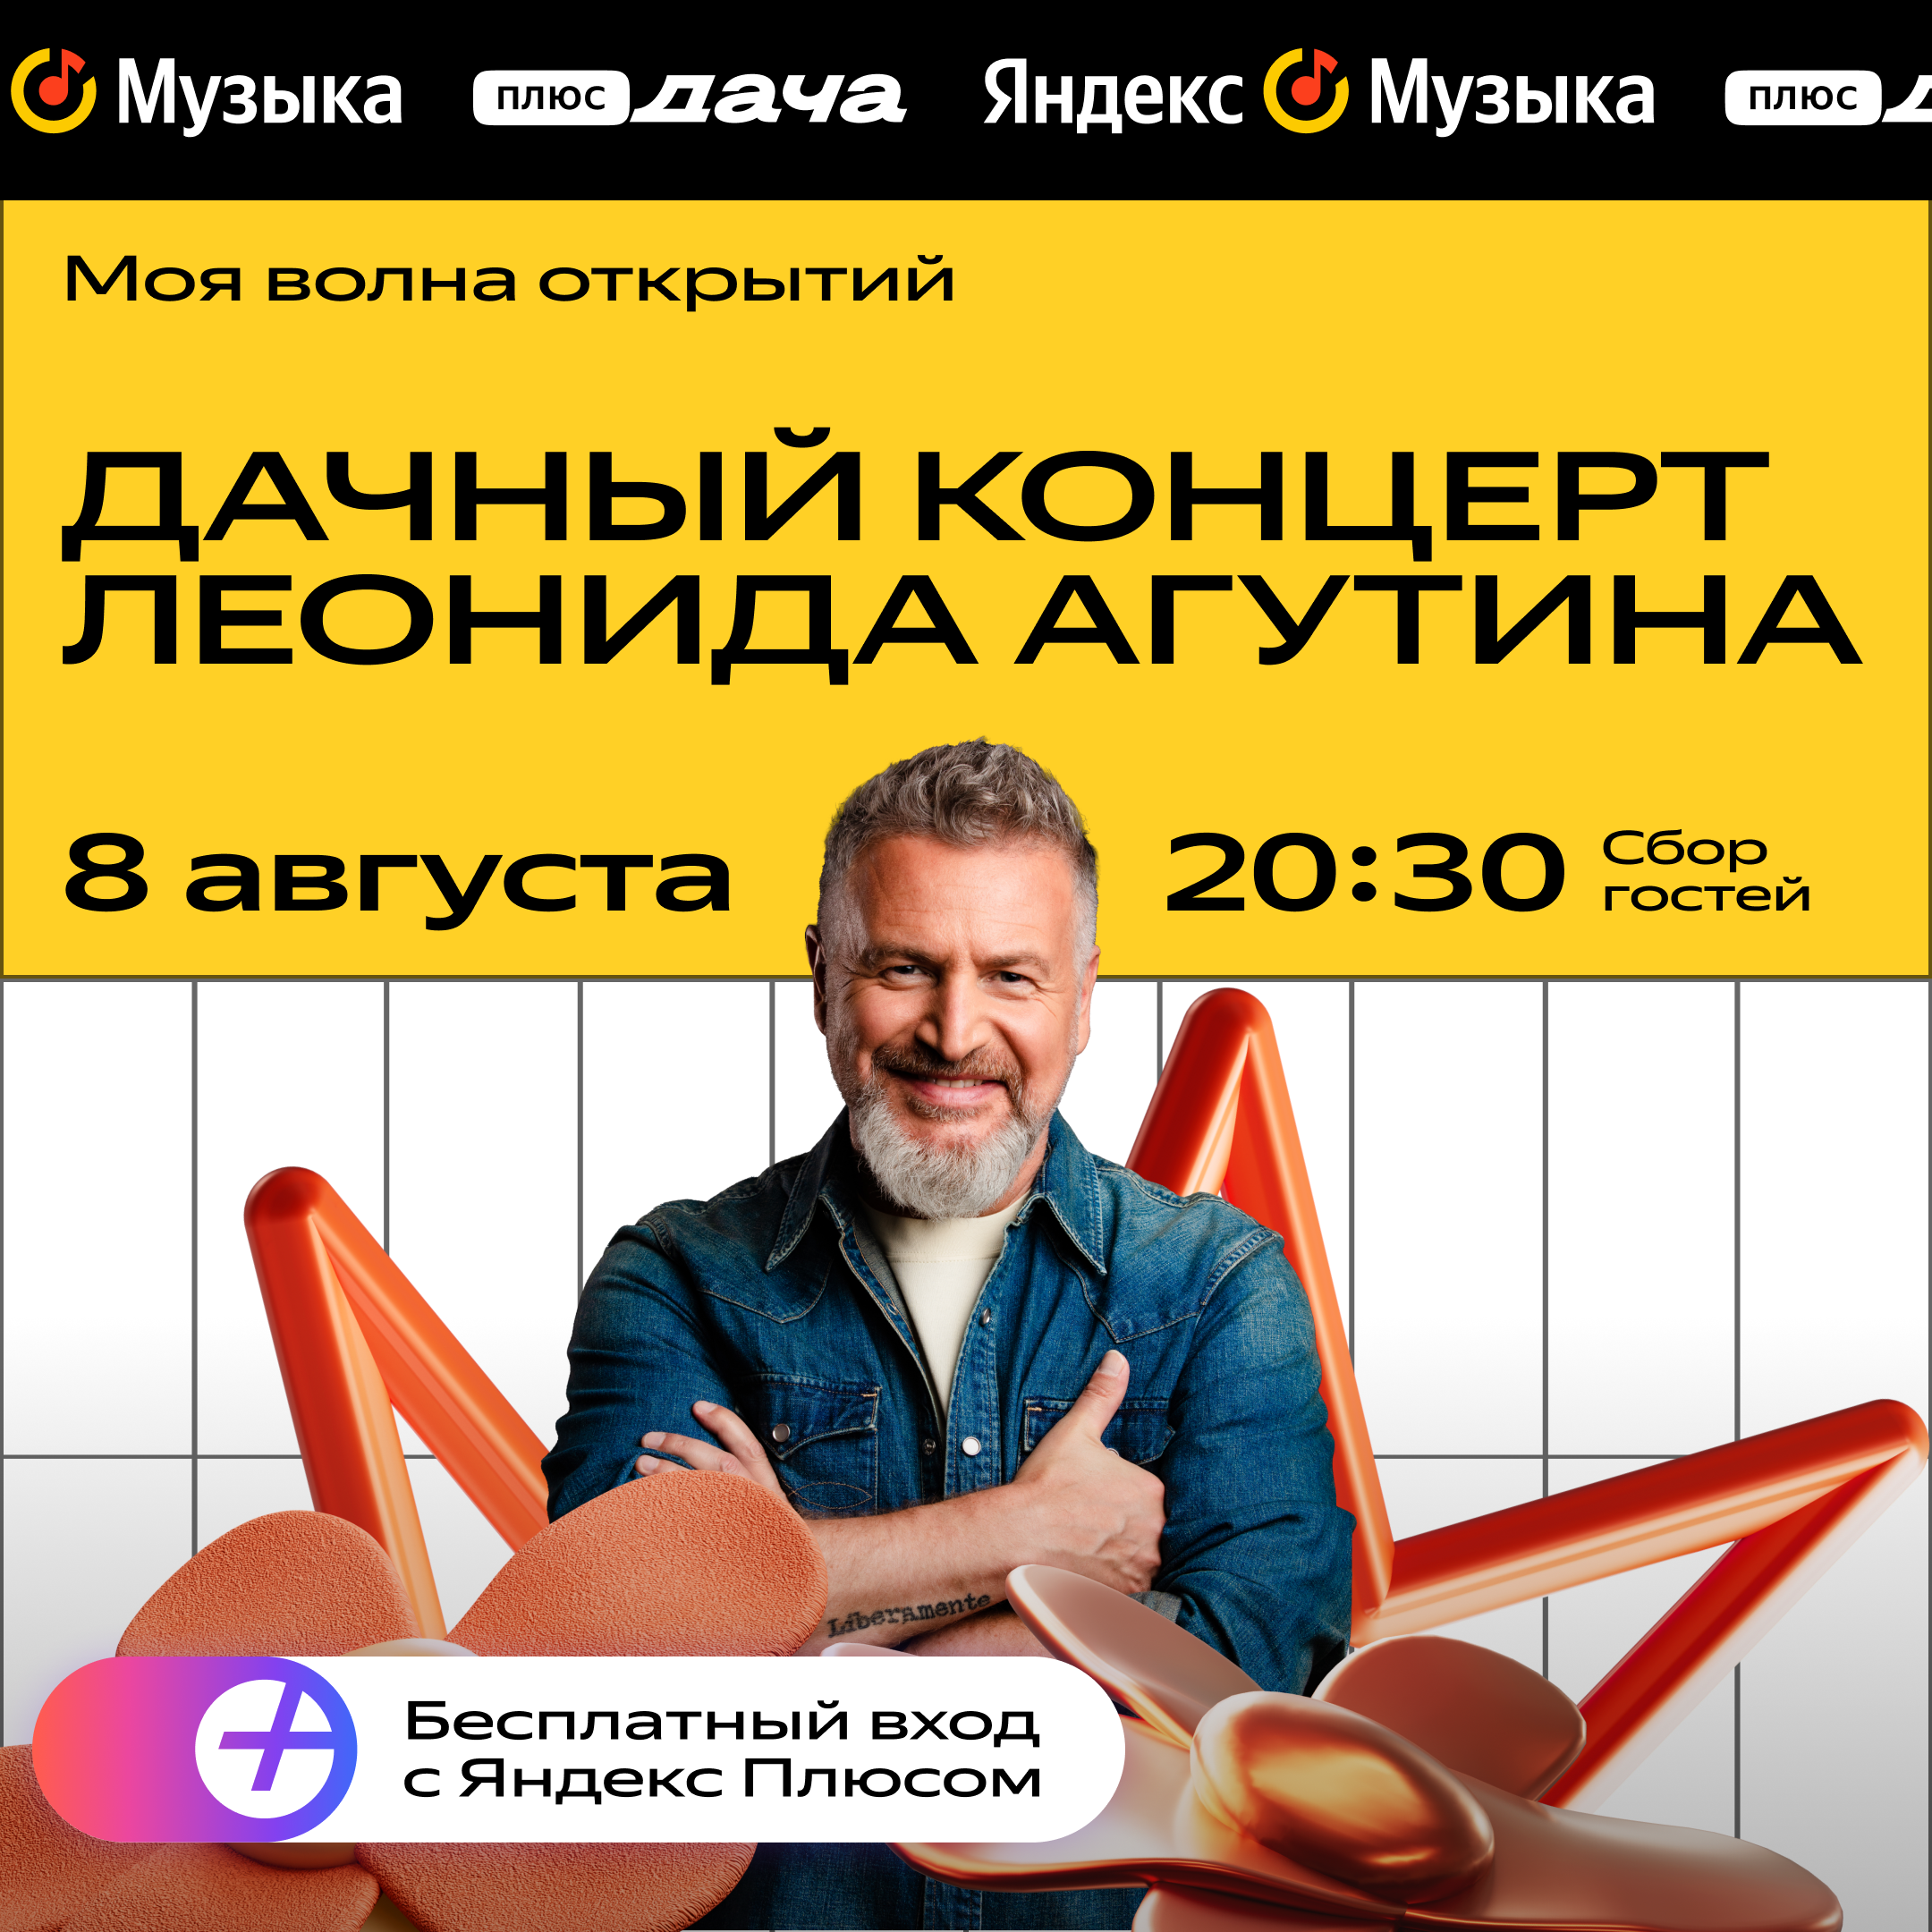 Леонид Агутин выступит на закрытии летней программы «Яндекс Музыки» на «Плюс Даче» (фото 1)